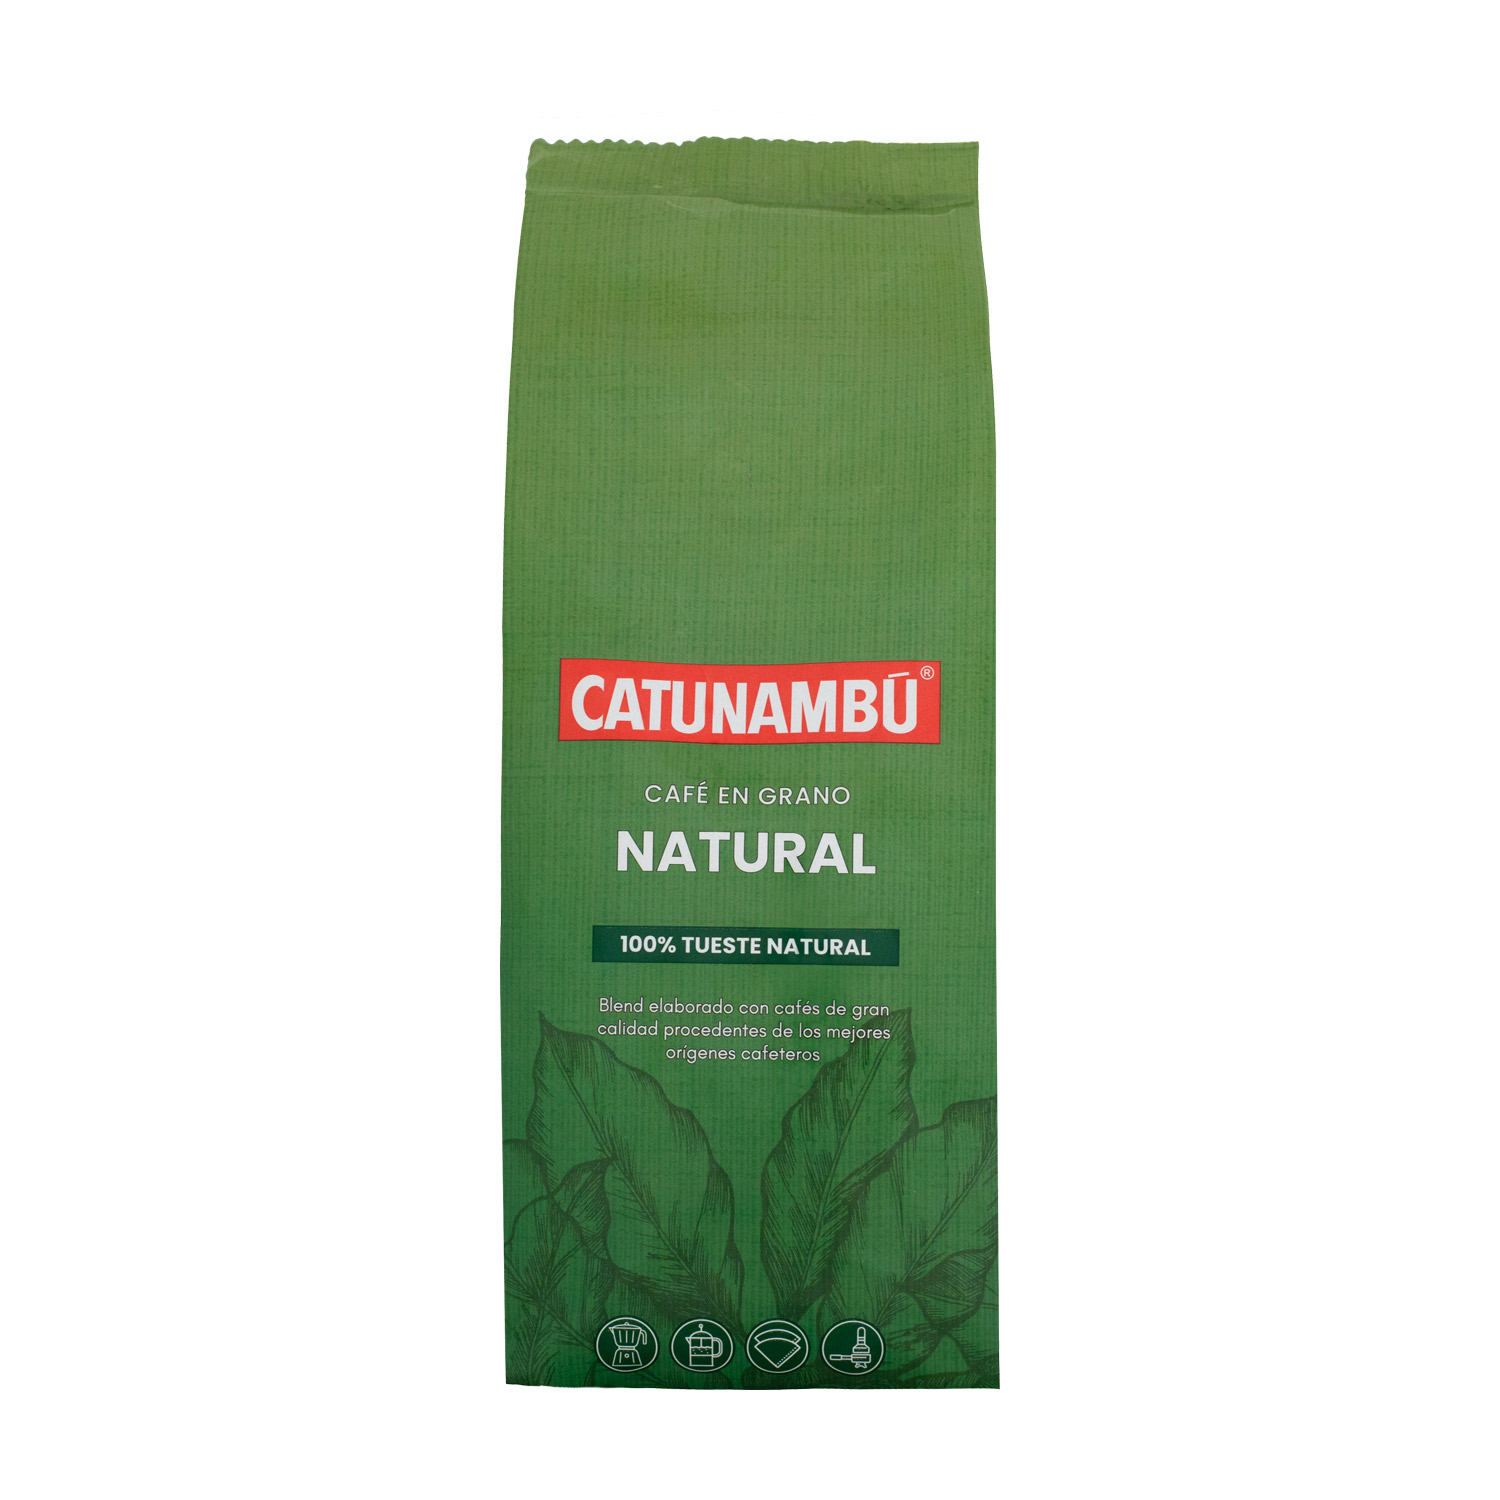 Paquete de café en grano natural Catunambú de 250gr.